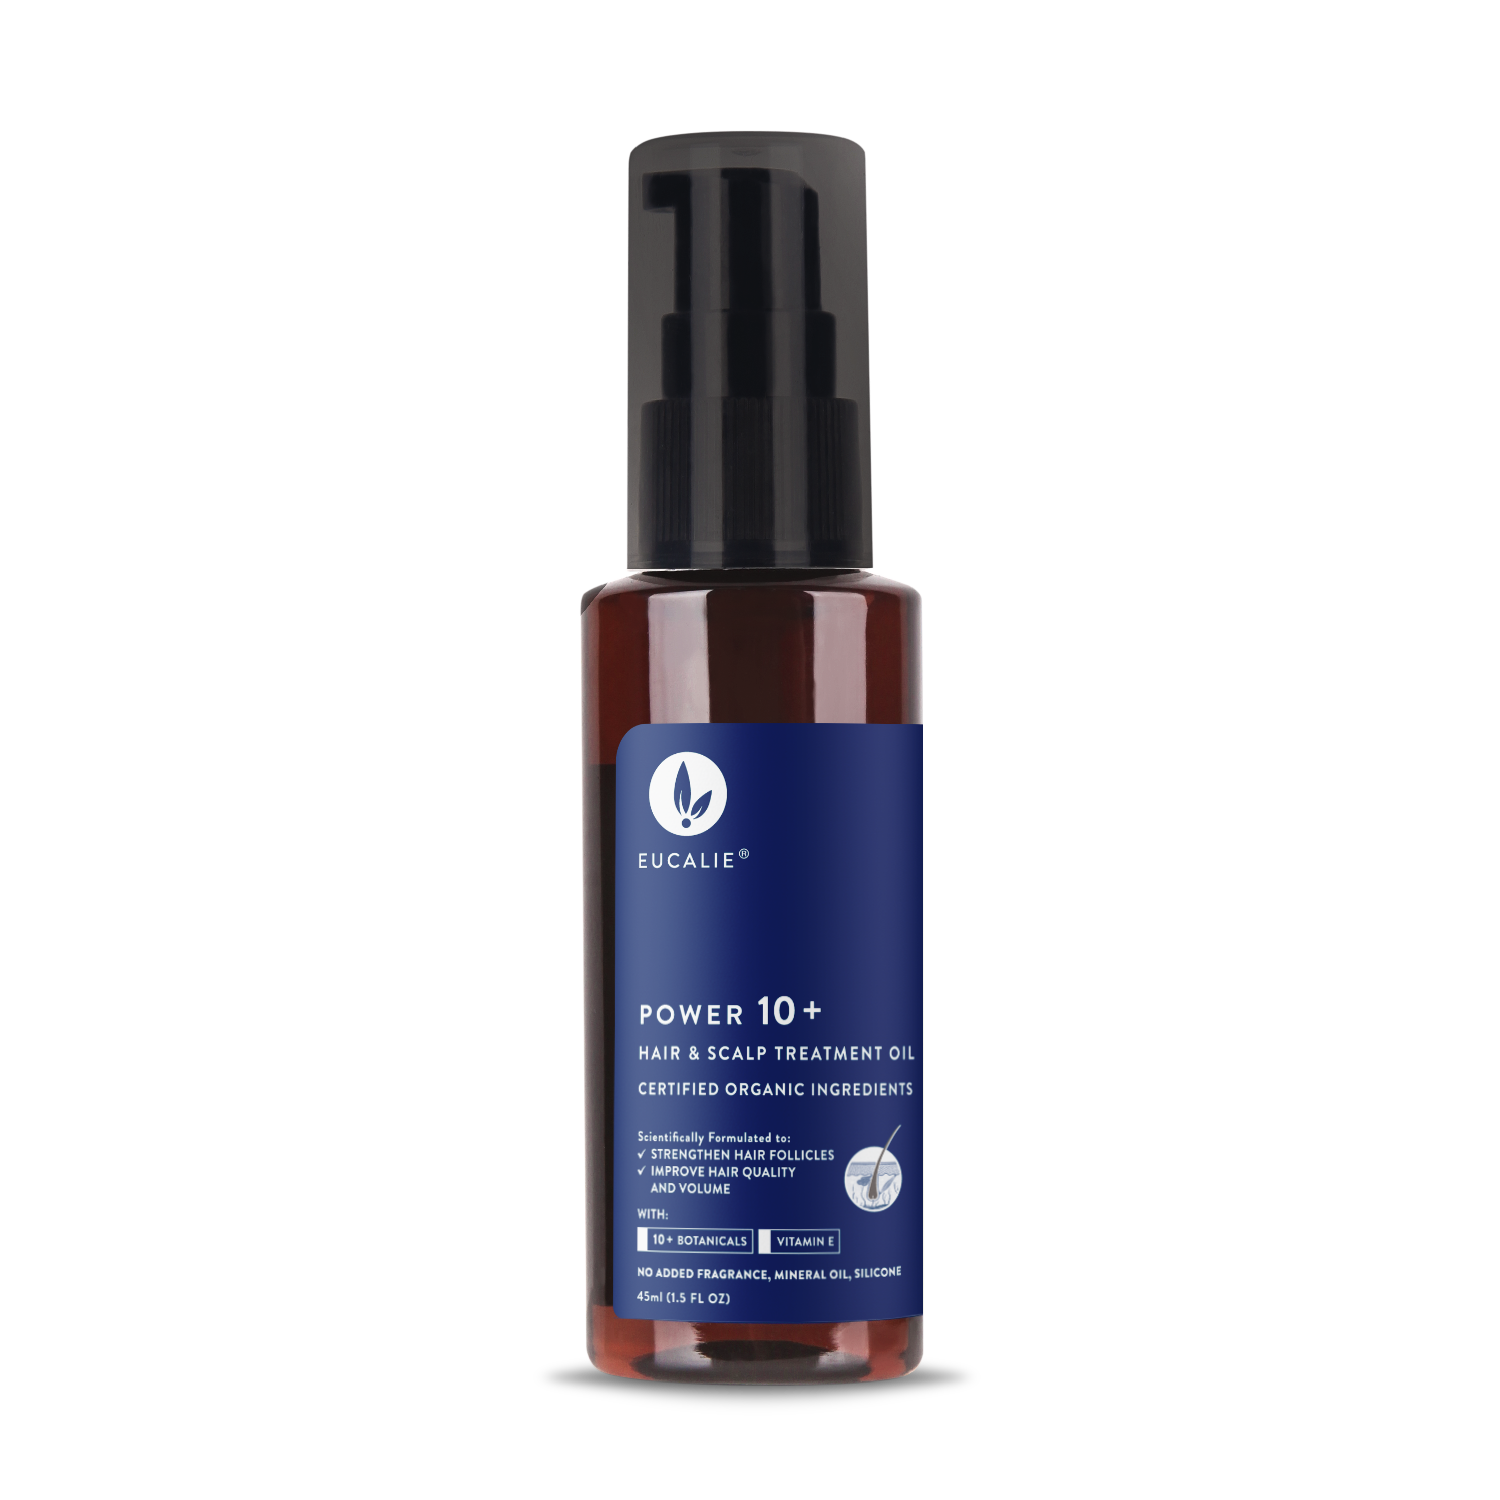 Eucalie Organic Hair & Scalp Treatment Oil â€“ Power 10+ 